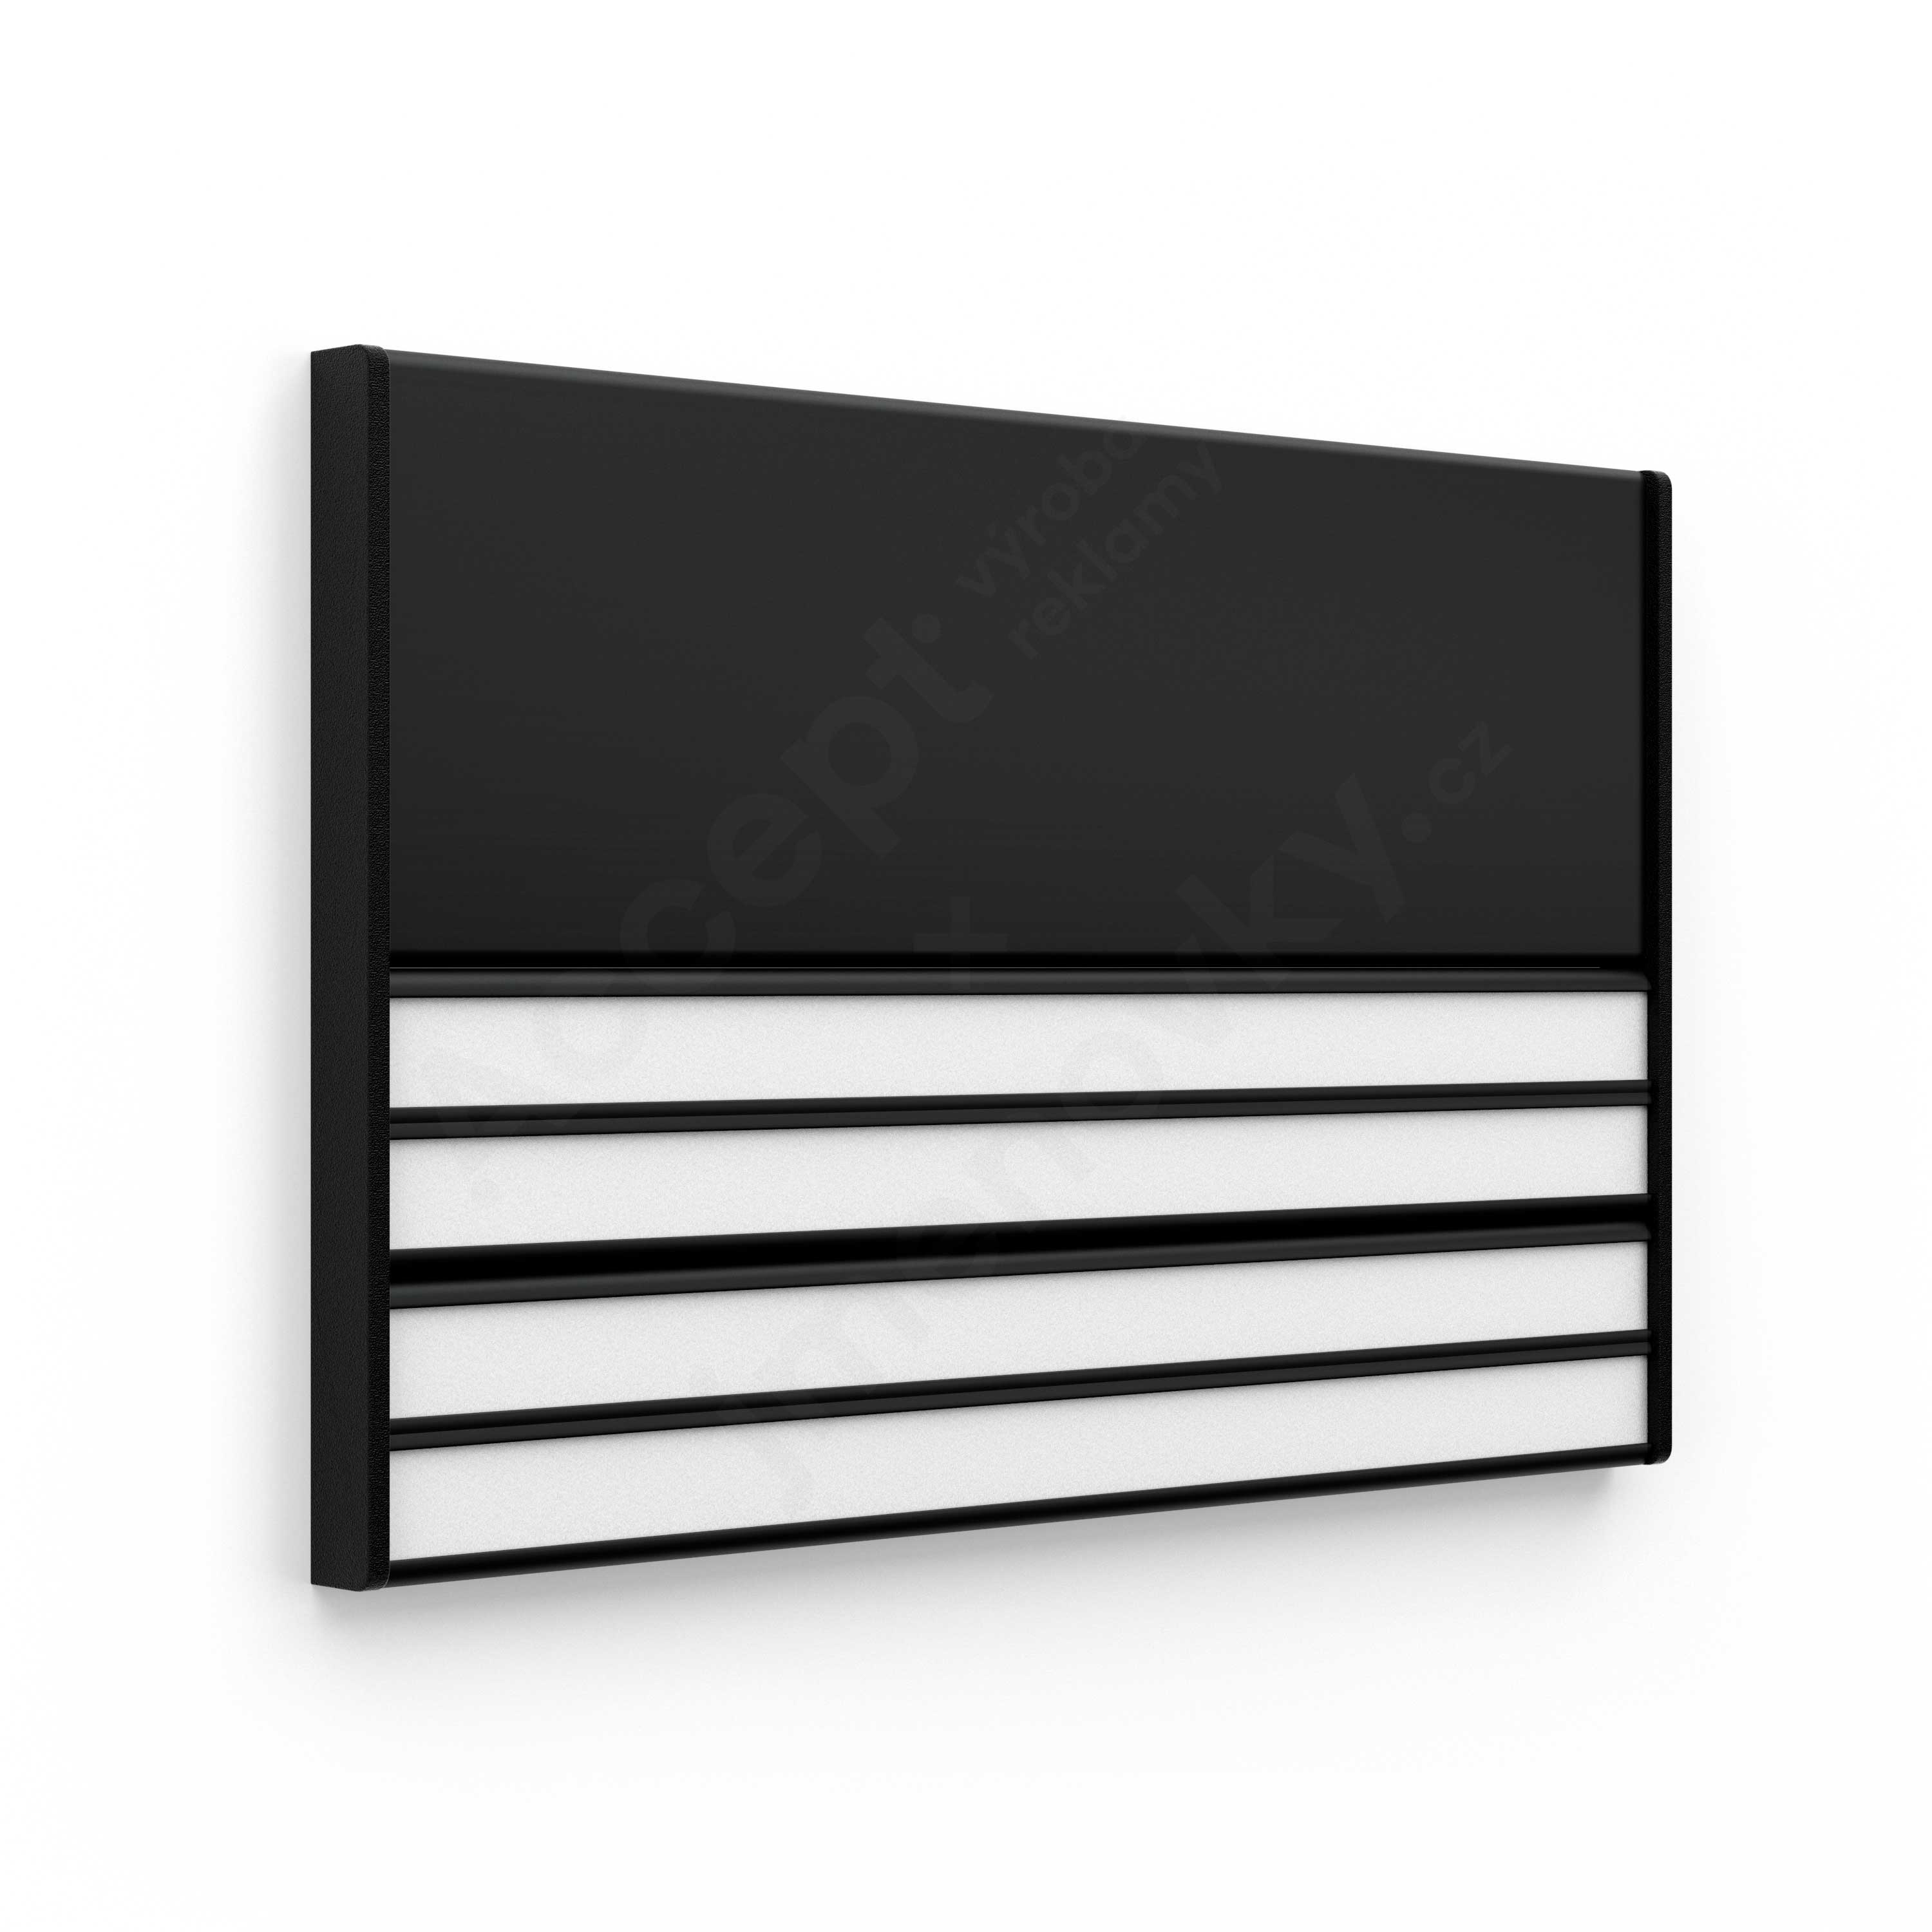 Dveřní tabulka ACS černá (kombinovaný systém, 187 x 125 mm)